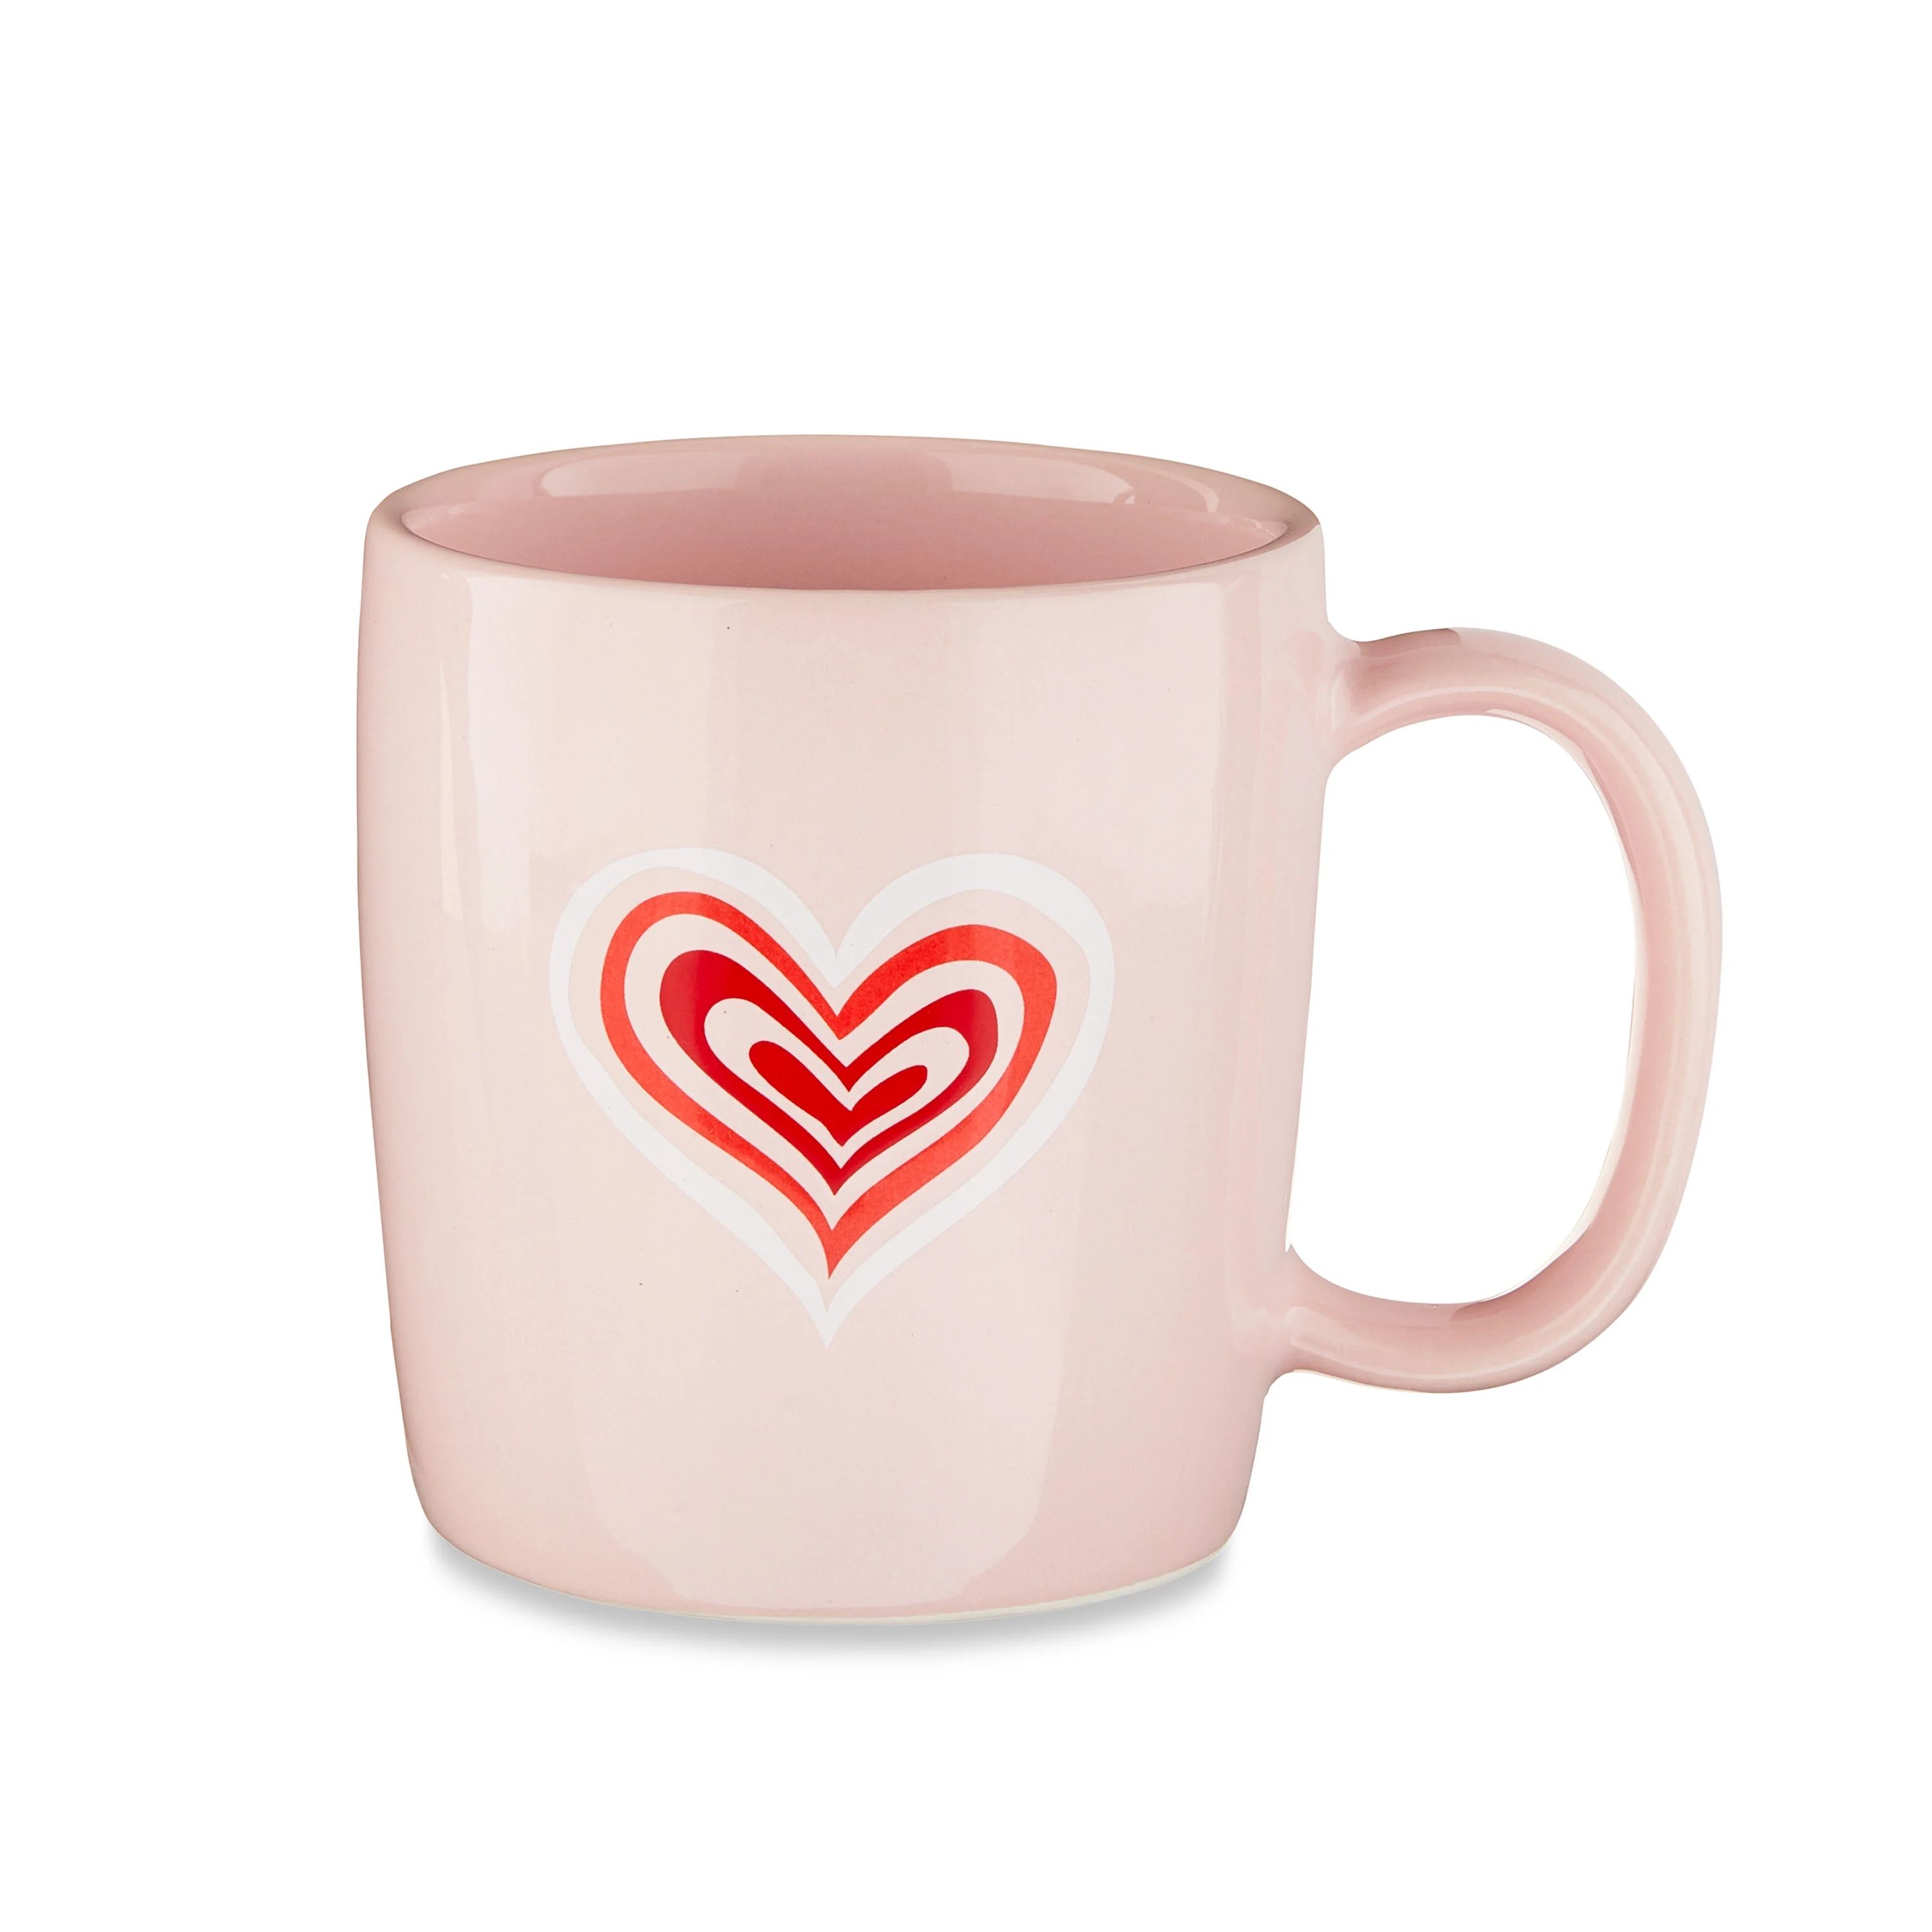 Valentine's Day 15 oz Pink Glazed Ceramic Mug with Heart Design by Way To Celebrate | Walmart (US)